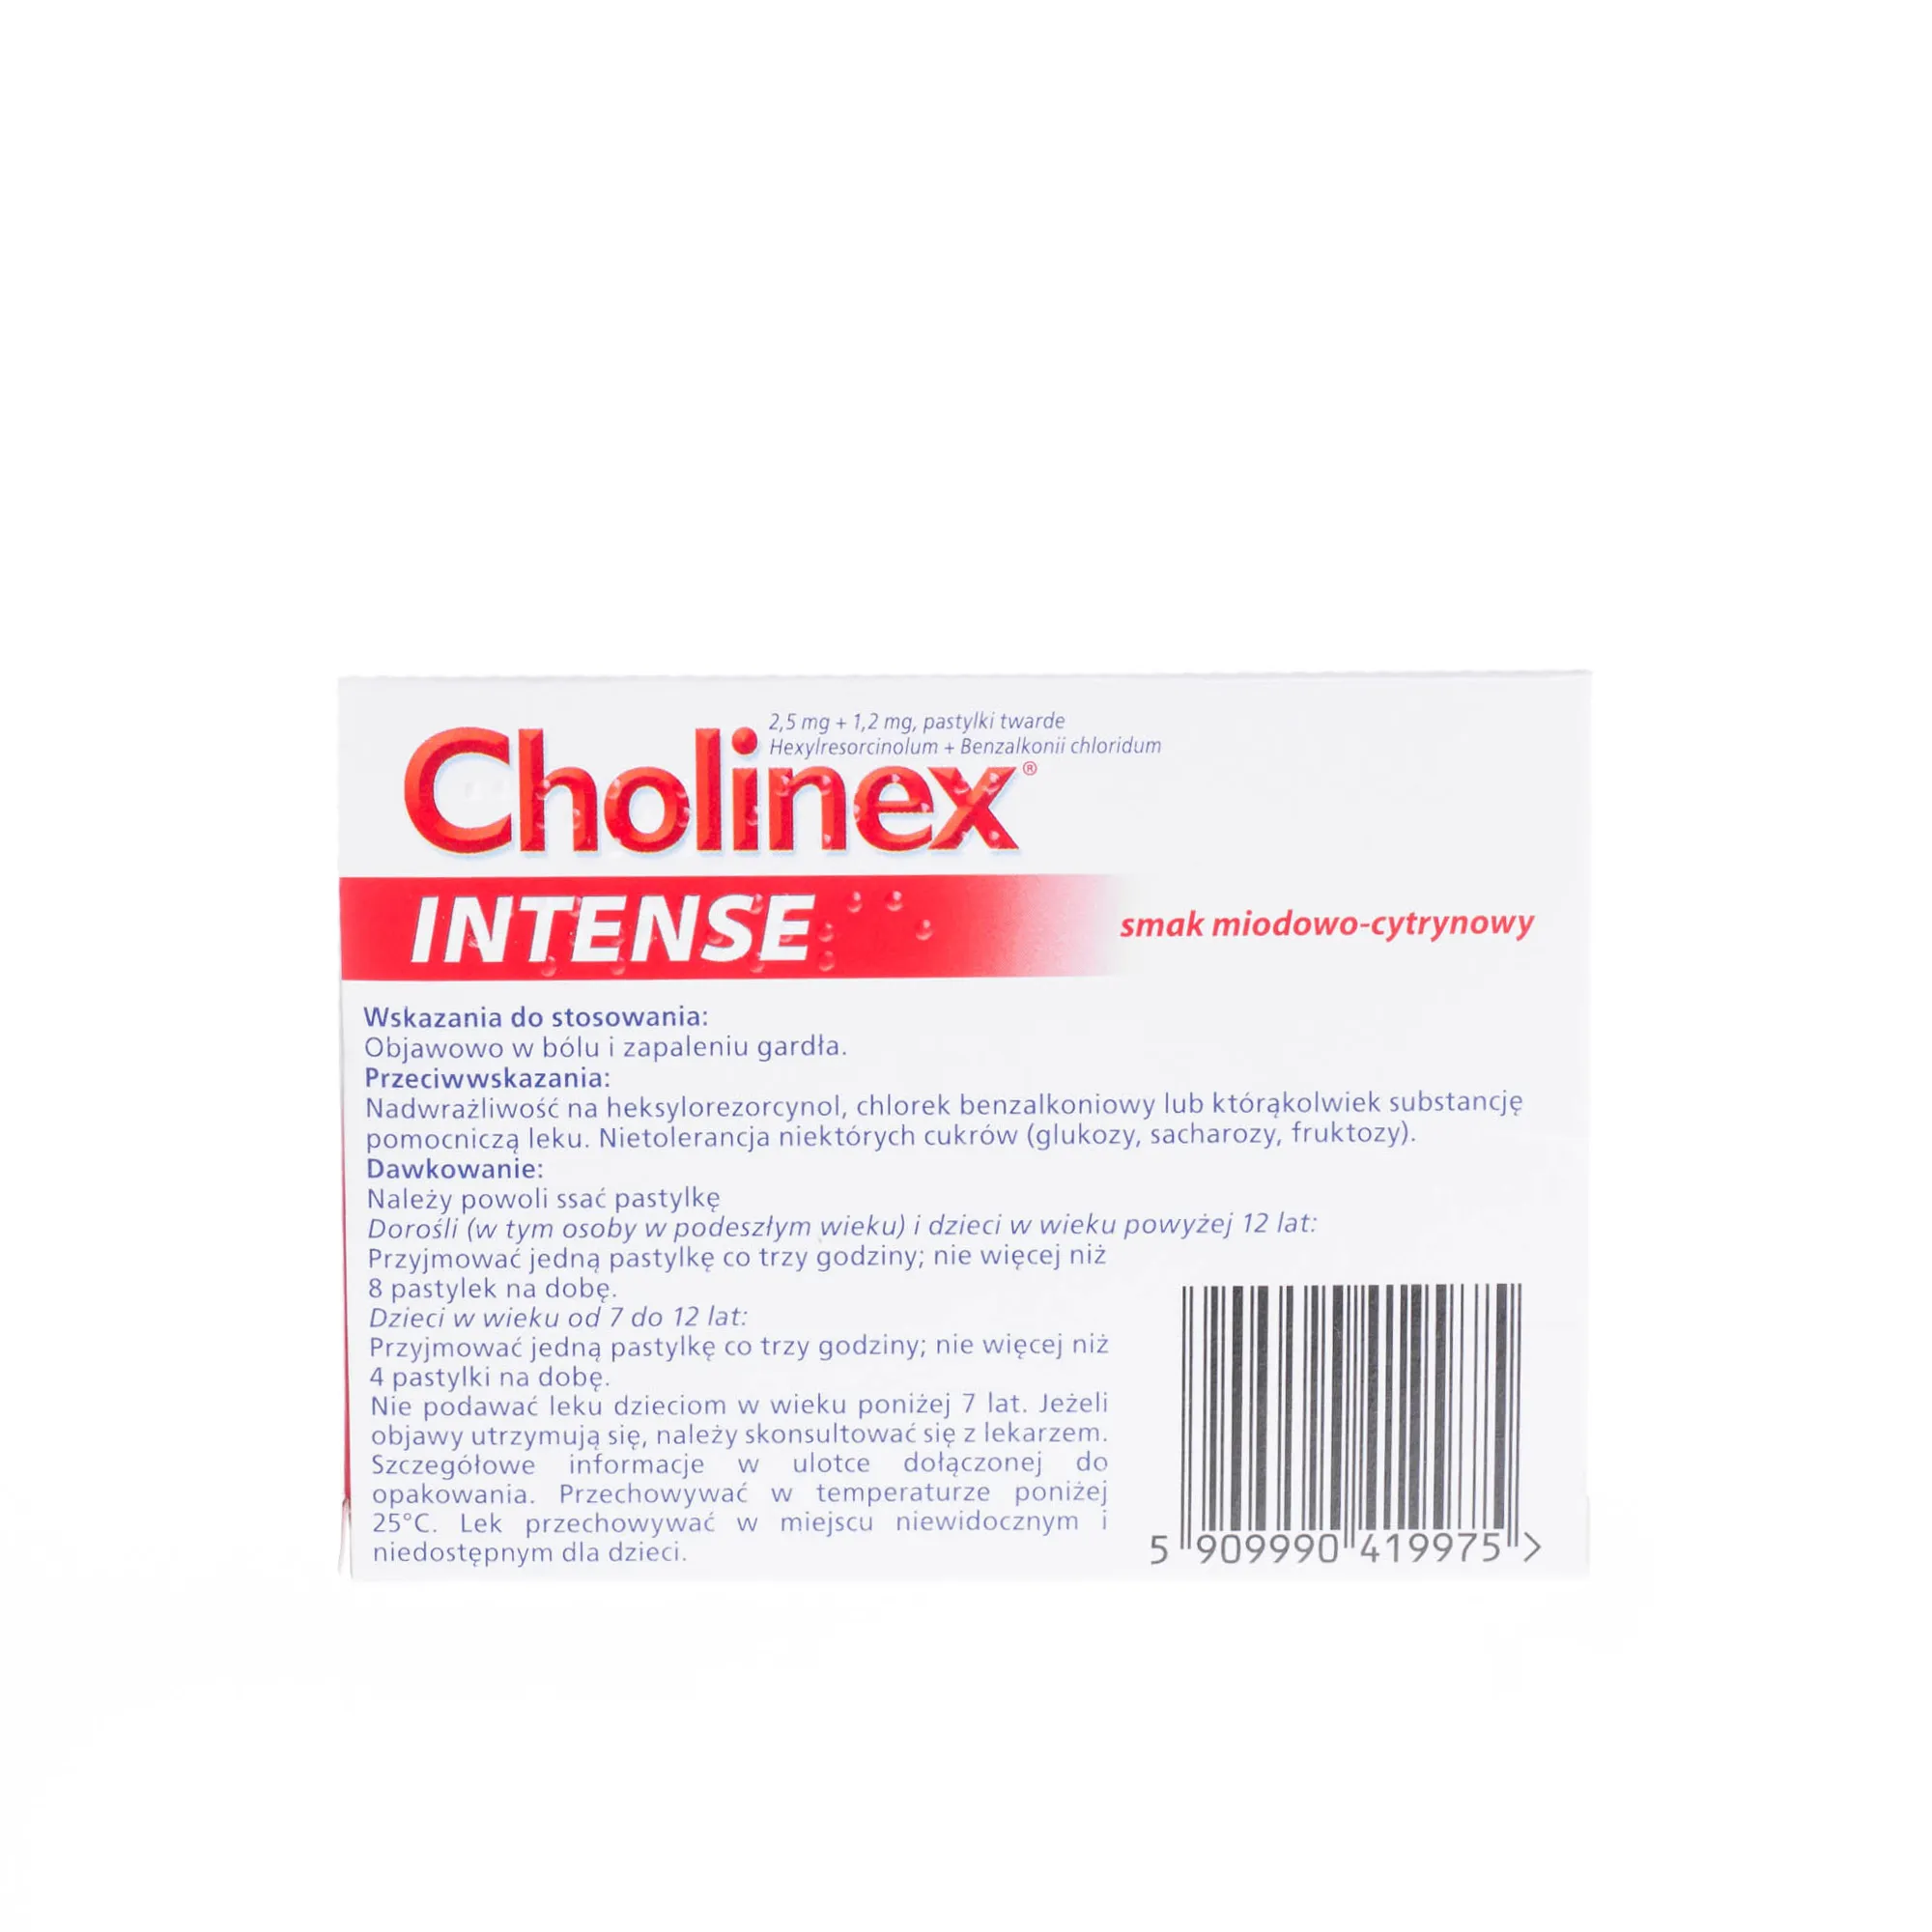 Cholinex intense, 20 pastylek twardych, smak miodowo-cytrynowy 